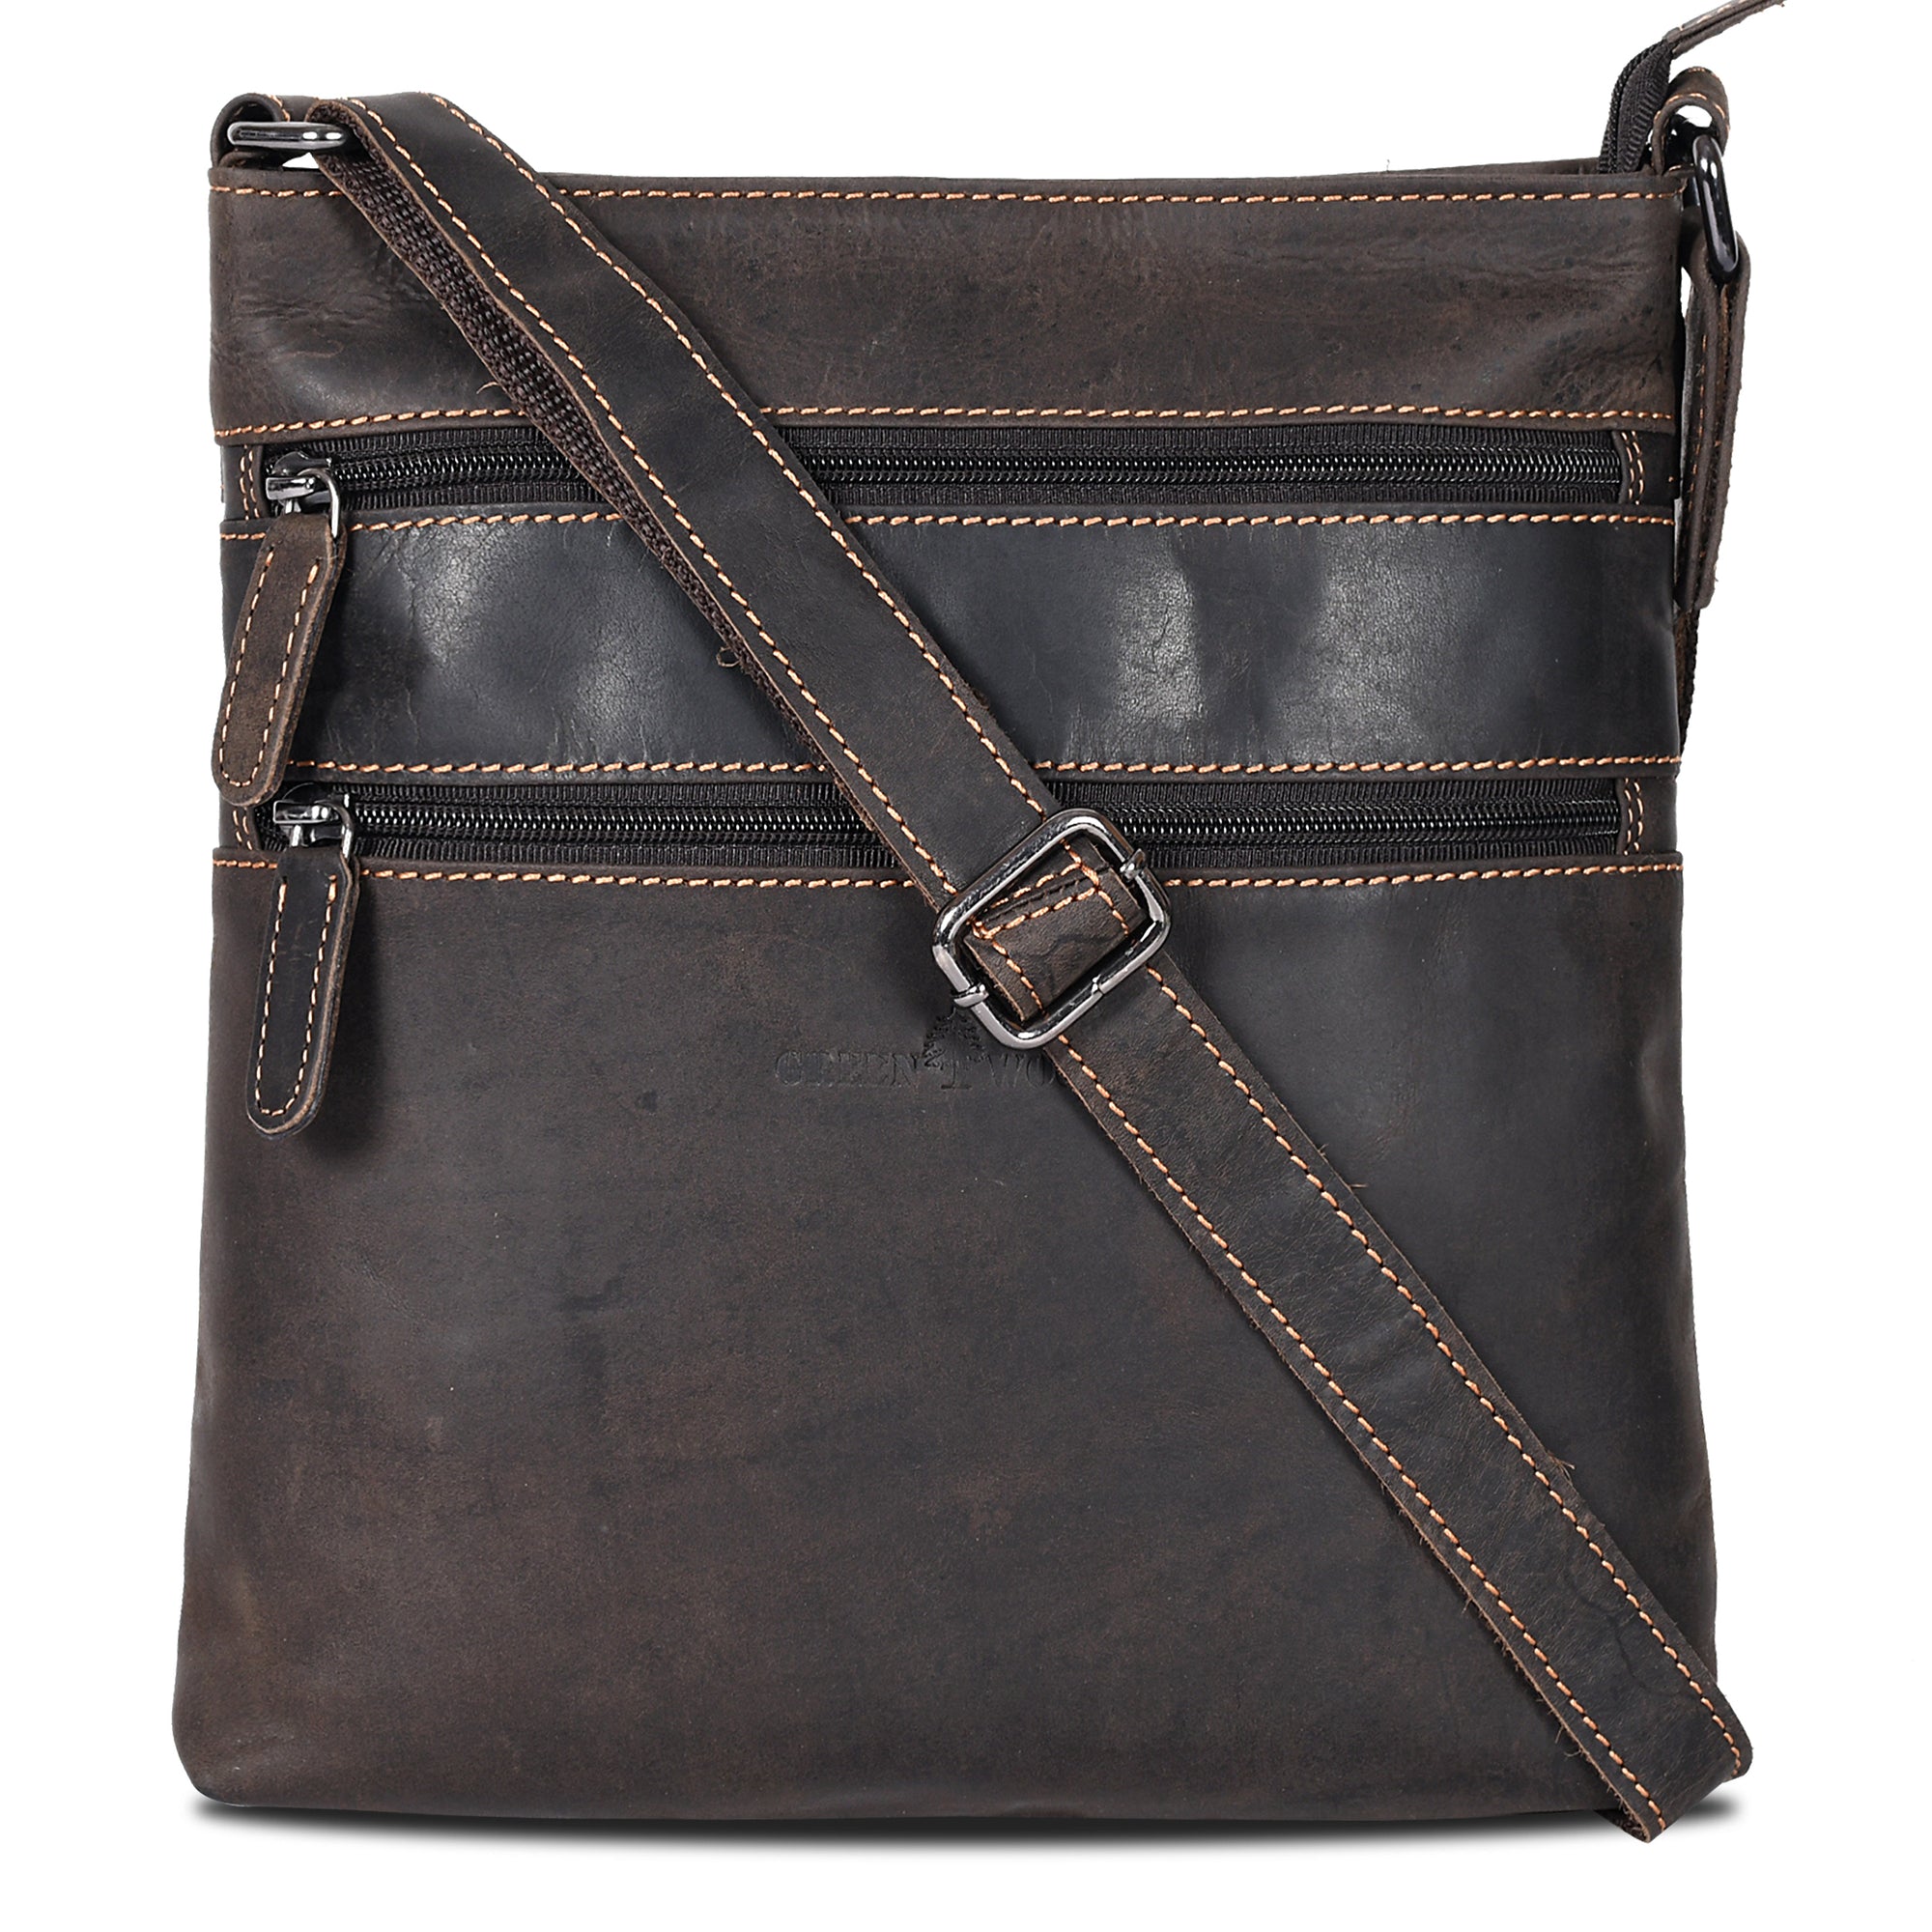 DKNY Elissa Leopard Shoulder Flap Bag Leather Purse for sale online | eBay